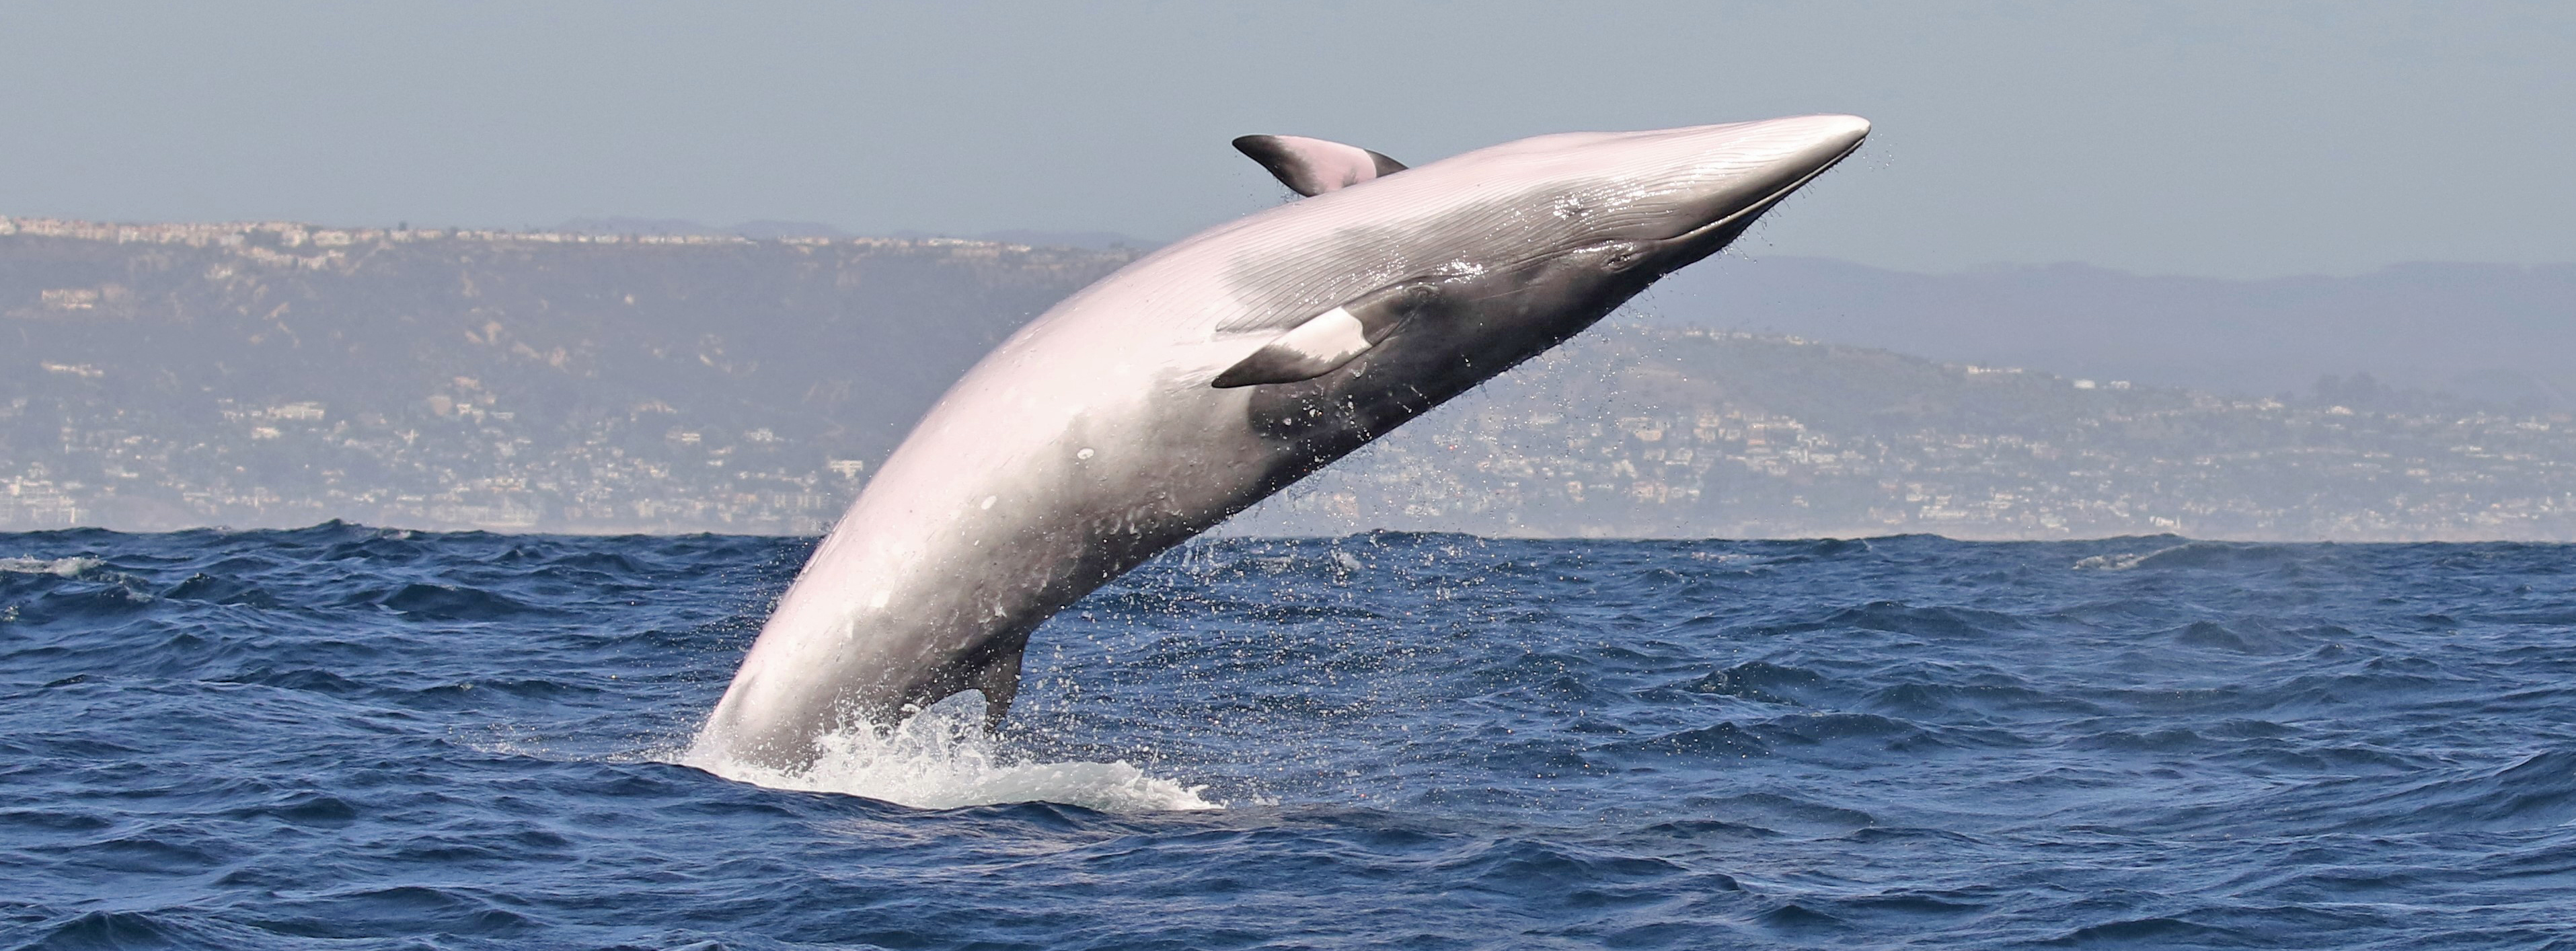 Santa-Barbara-minke-whale